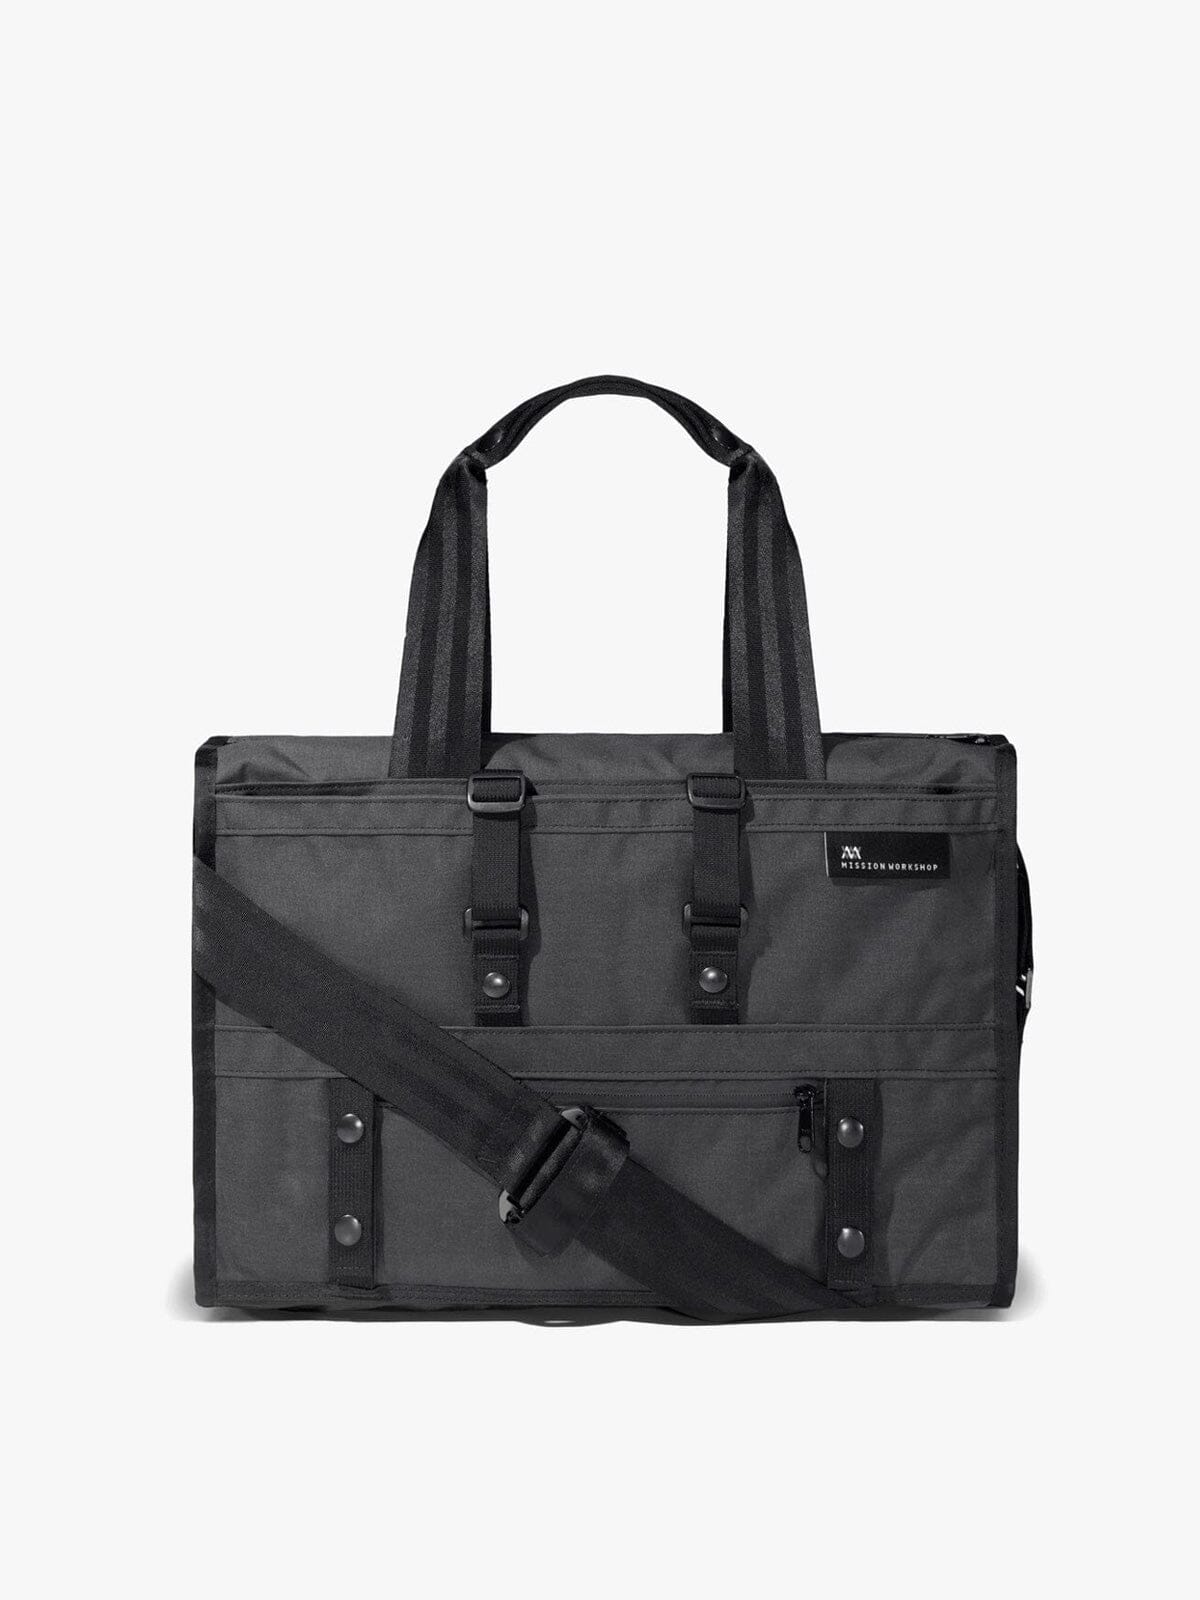 Transit Laptop Brief : 19L Shoulder Bag | MISSION WORKSHOP